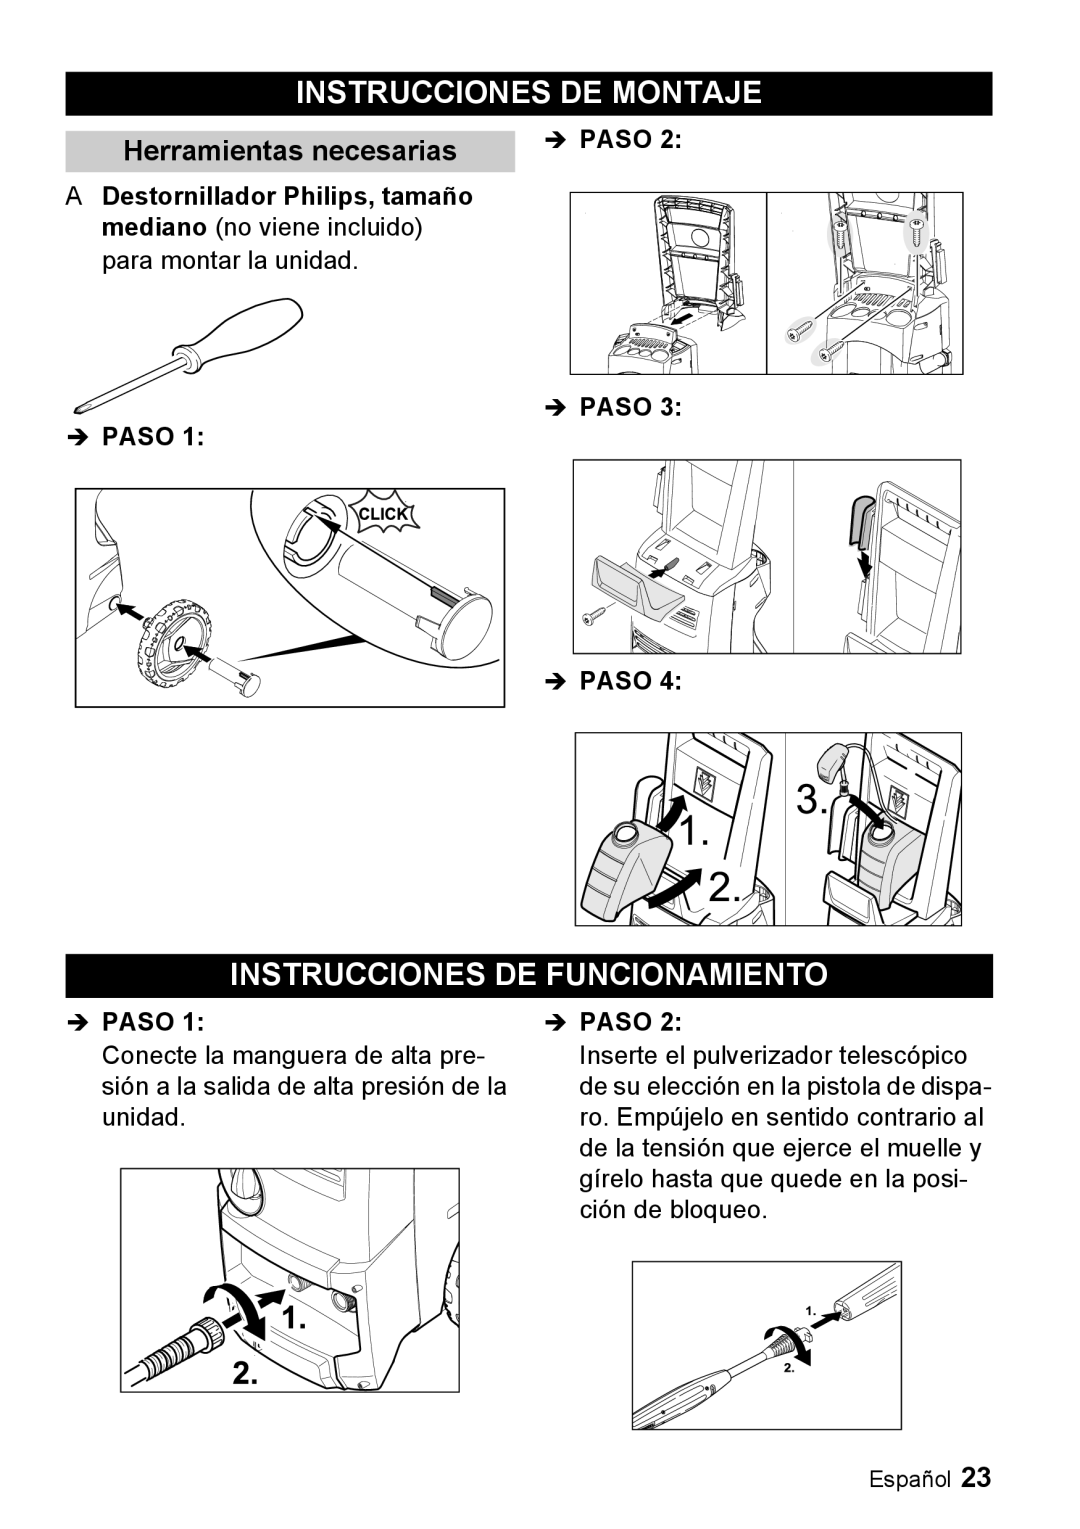 Karcher K 3.68 M manual Instrucciones De Montaje, Instrucciones De Funcionamiento, Herramientas necesarias, Îpaso 